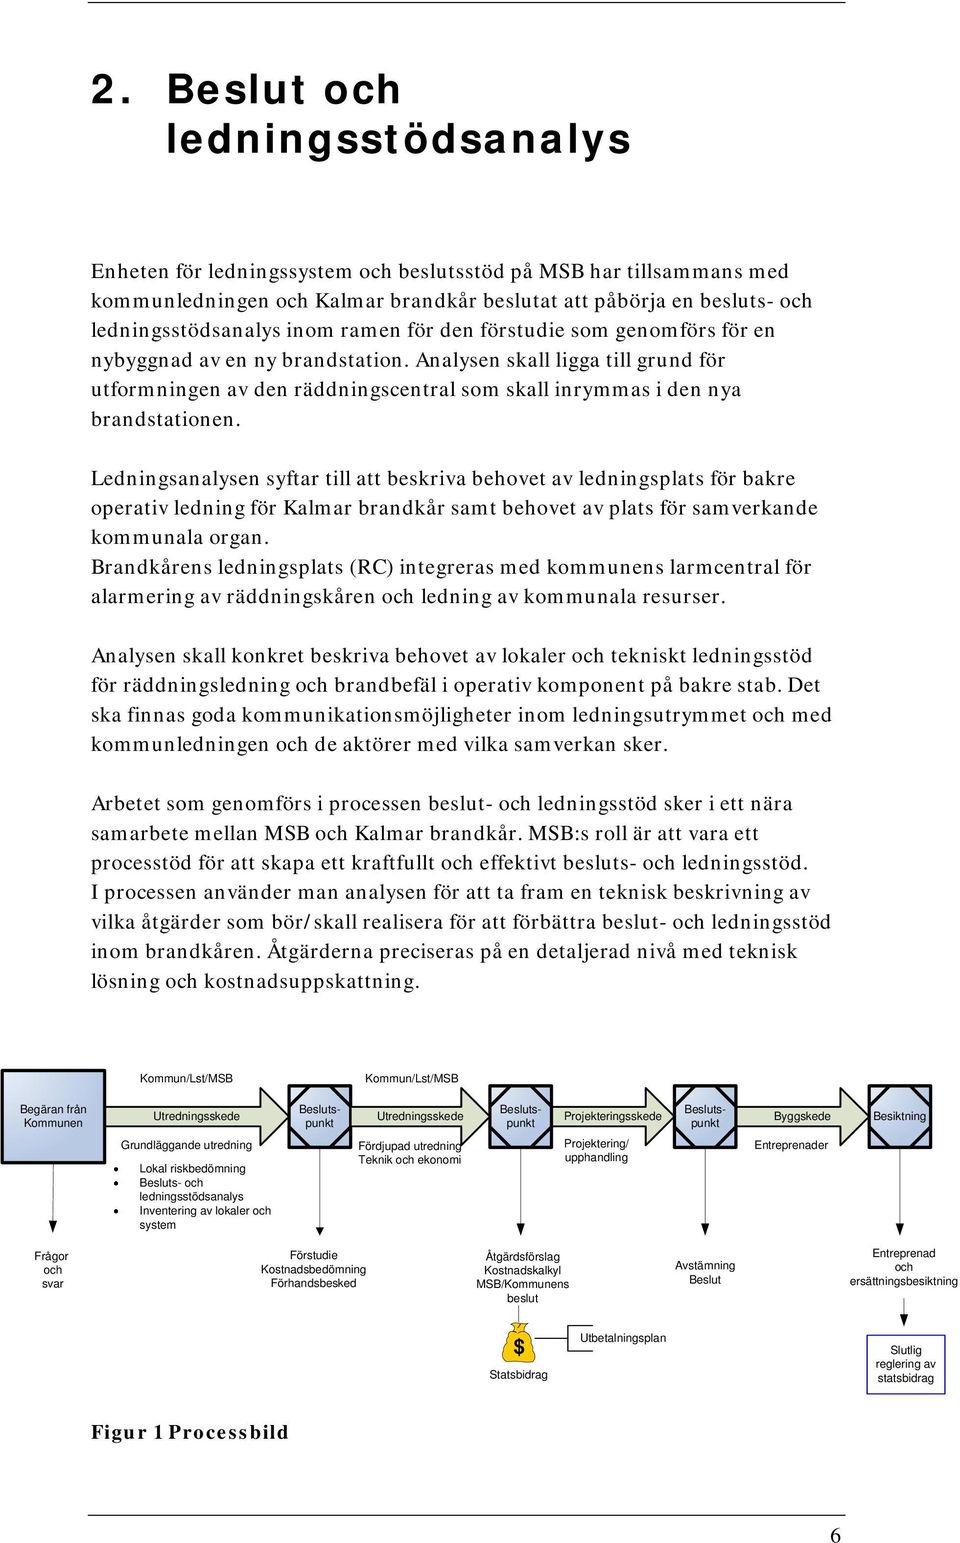 Ledningsanalysen syftar till att beskriva behovet av ledningsplats för bakre operativ ledning för Kalmar brandkår samt behovet av plats för samverkande kommunala organ.